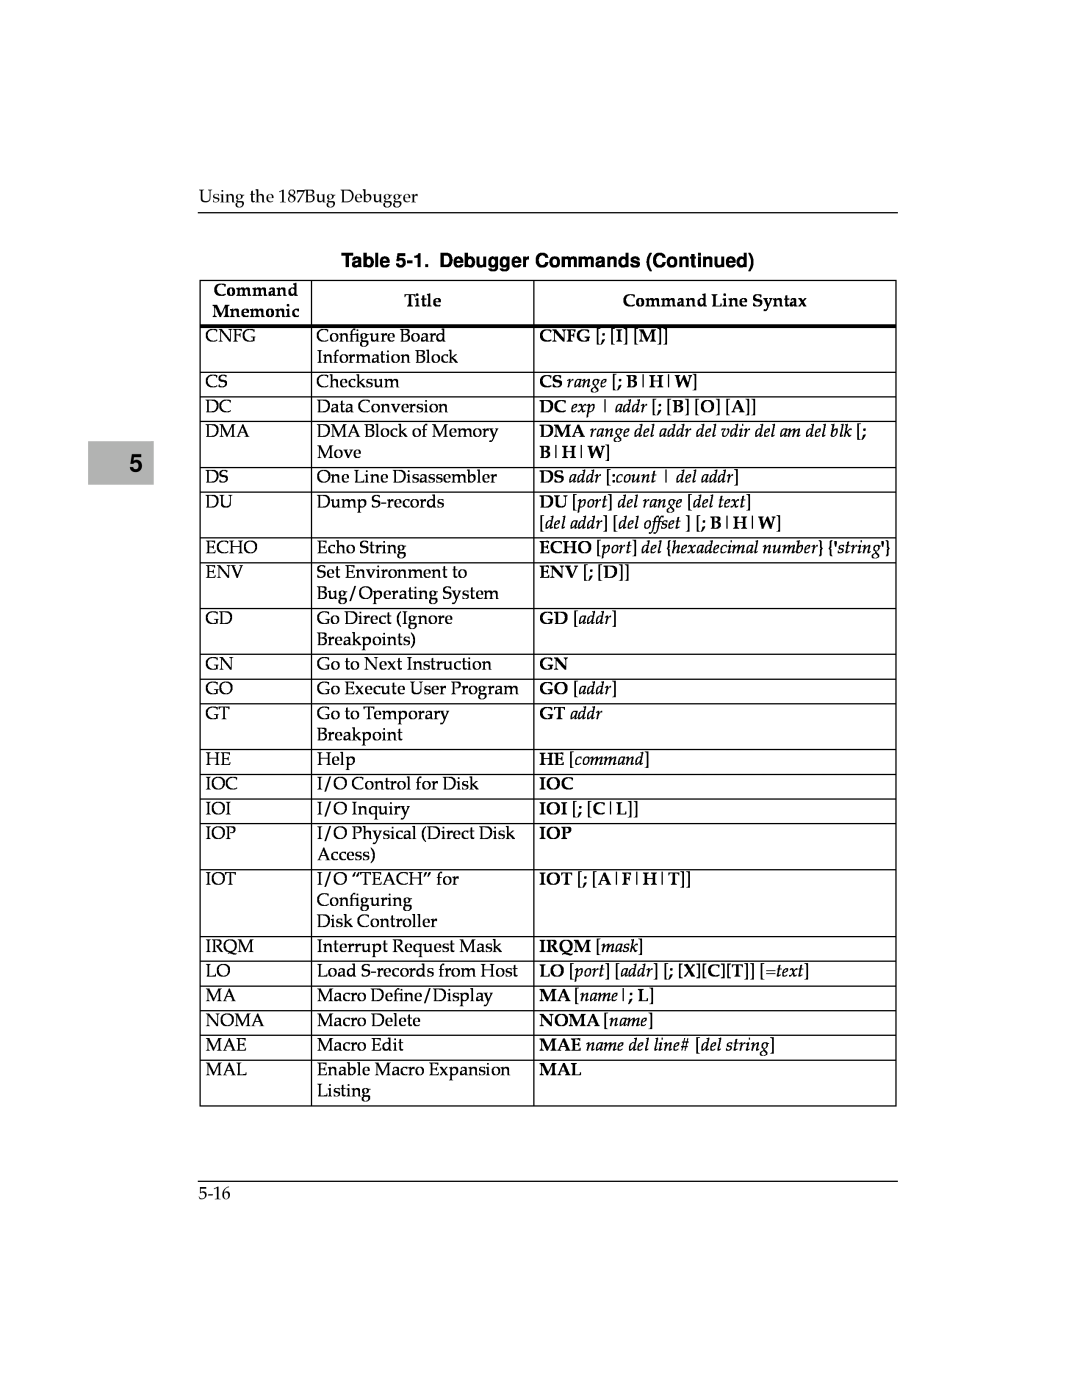 Motorola MVME187 manual 1. Debugger Commands Continued, DMA range del addr del vdir del am del blk, DS addr count del addr 